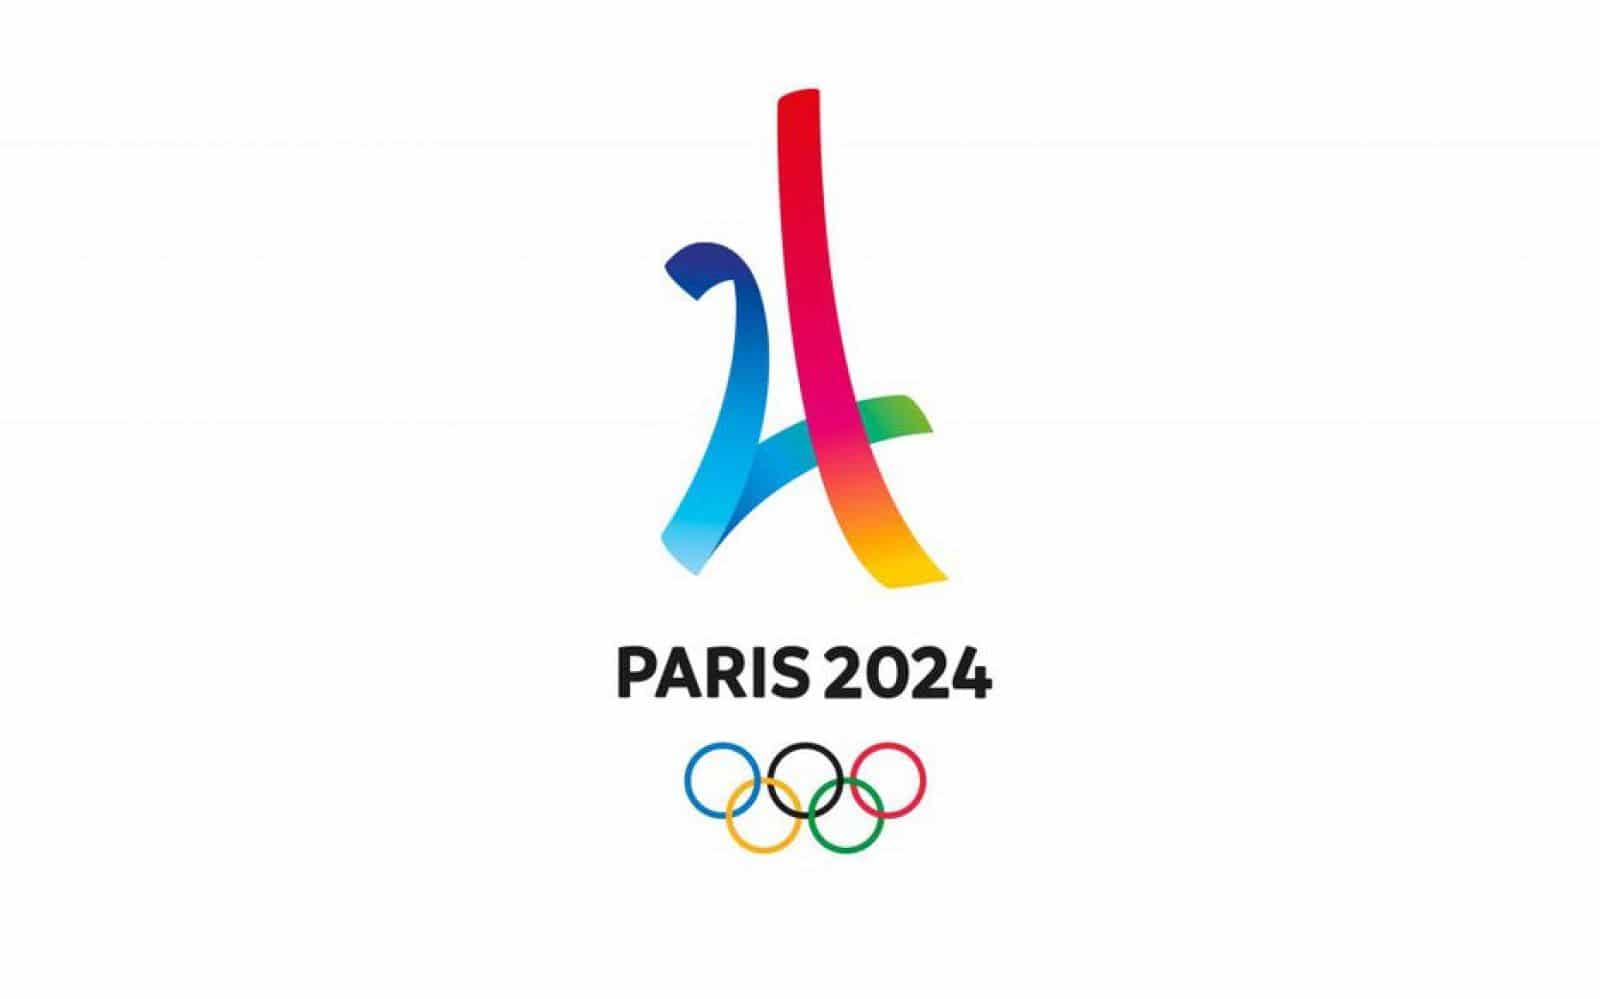 Paris 2024 on X: 20h24, 26 juillet 2024. Les regards du monde